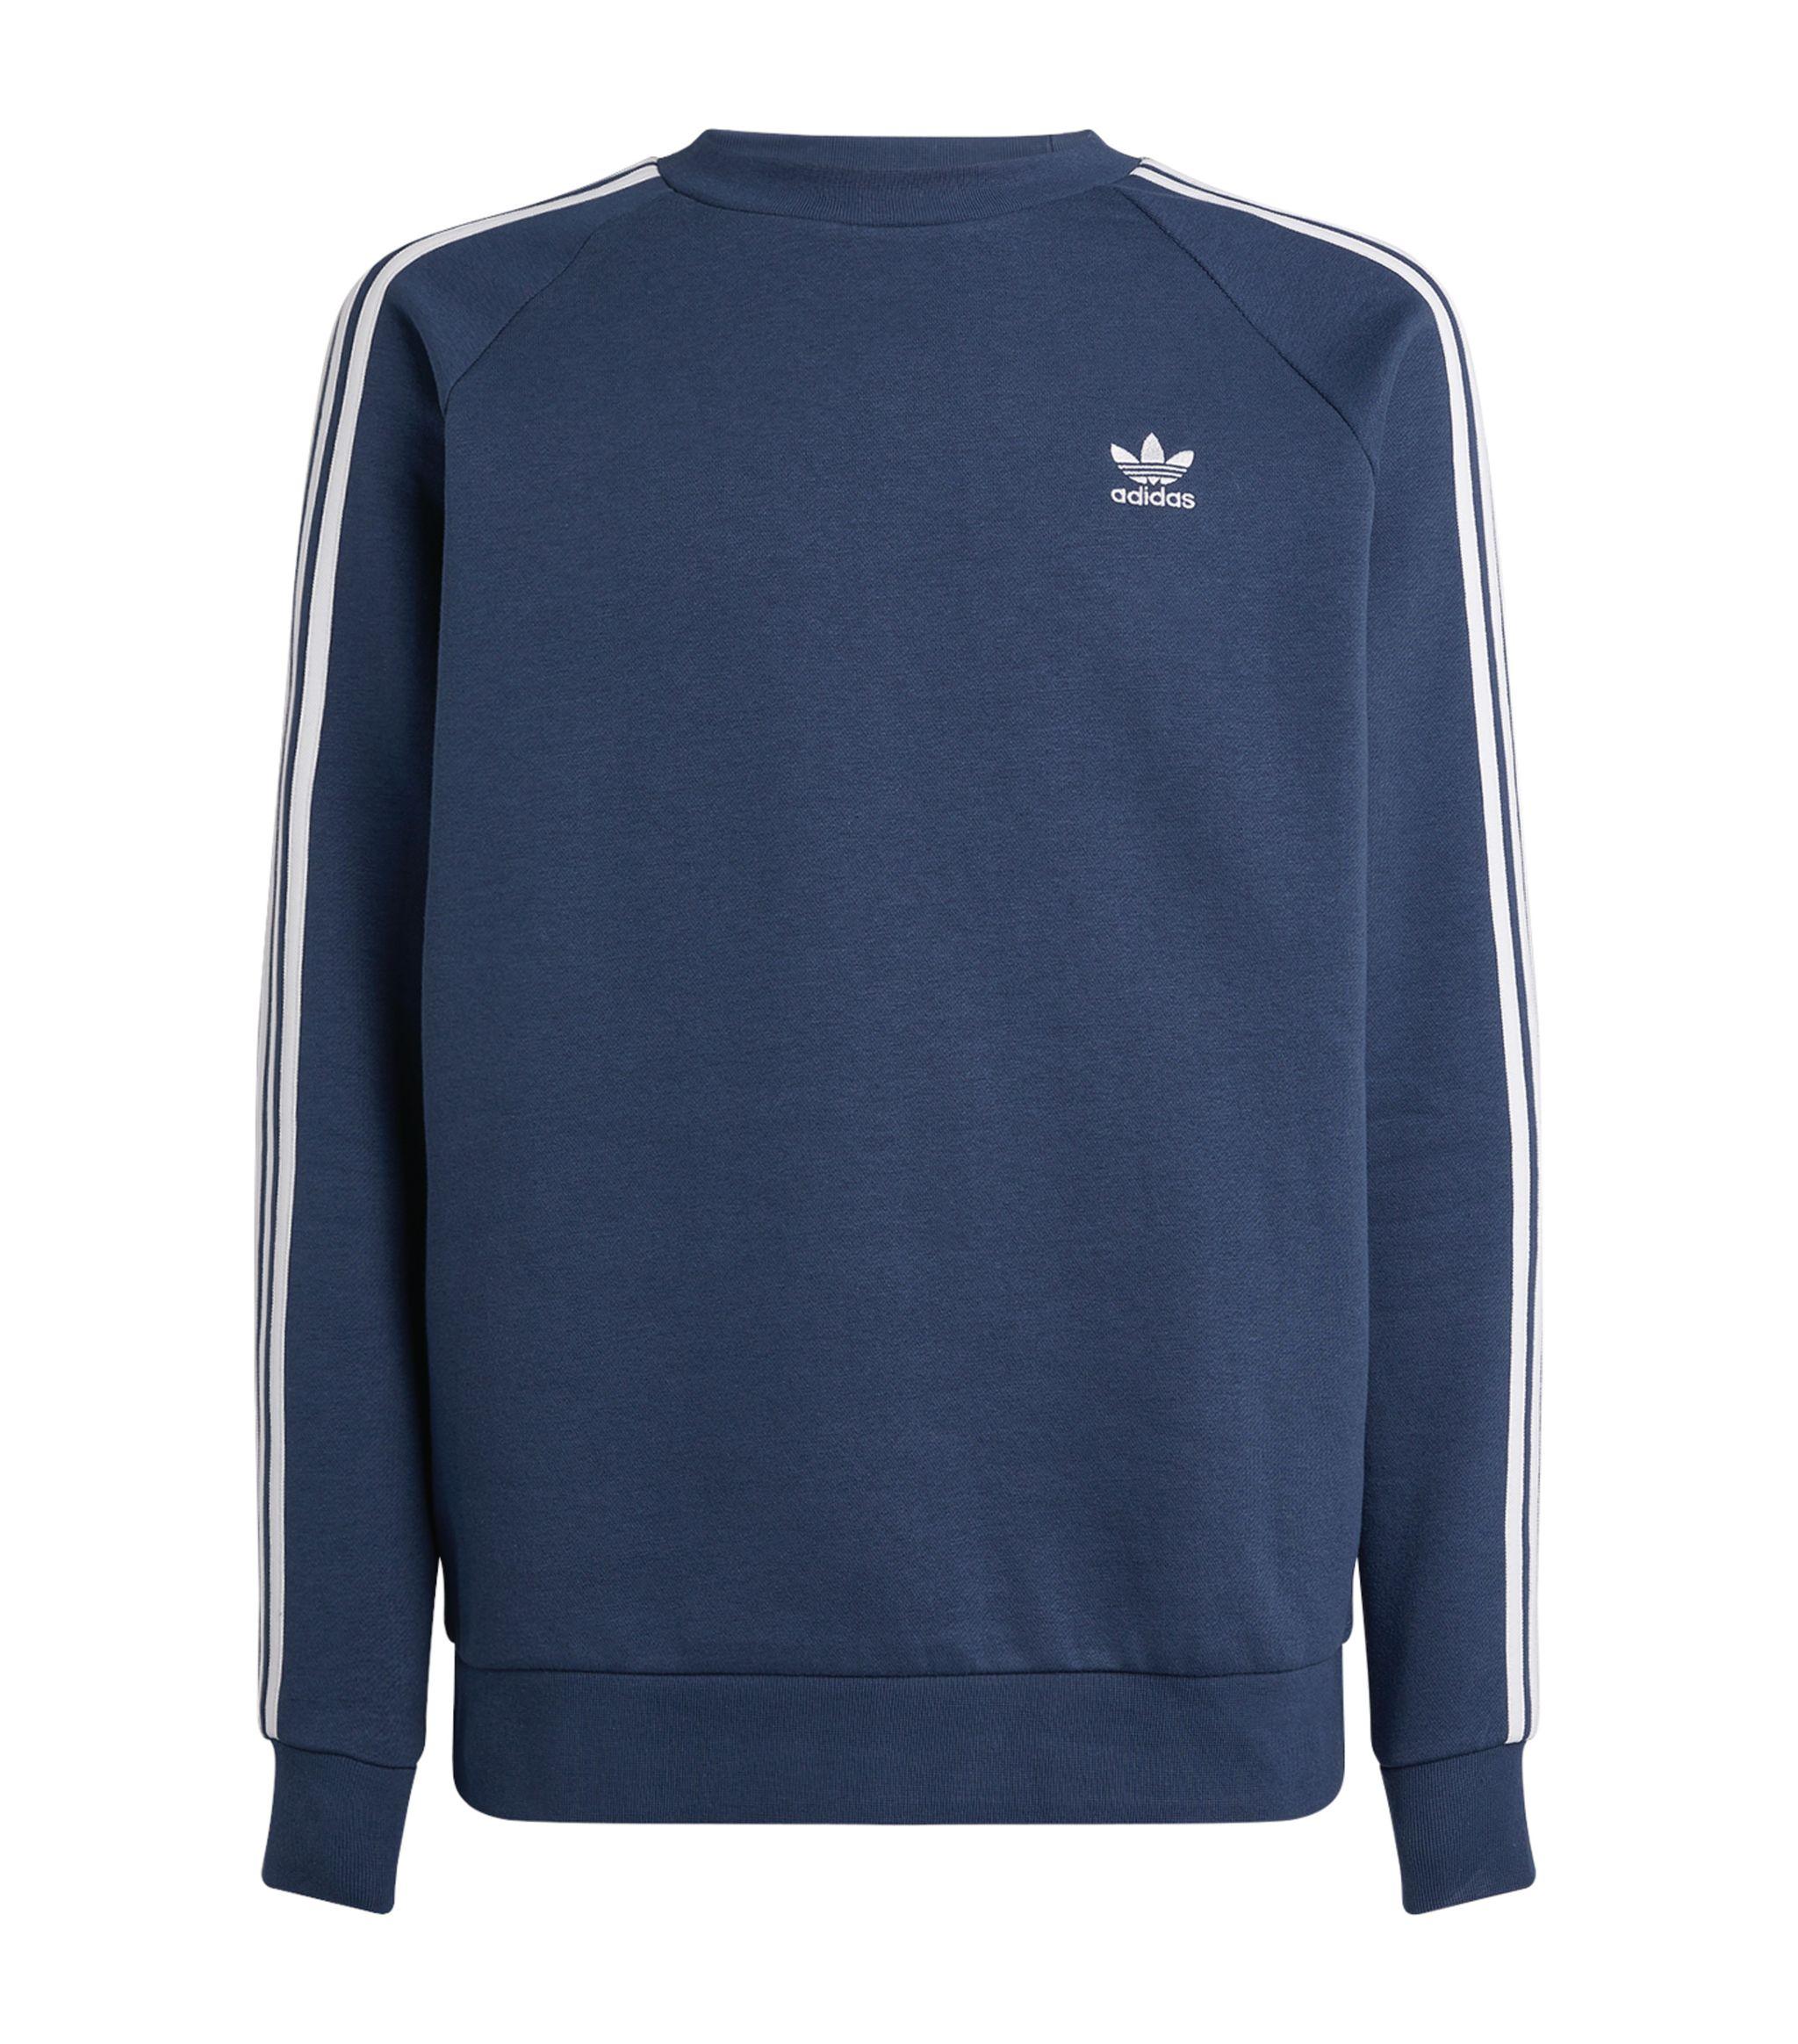 adidas Originals Cotton 3-stripes Sweatshirt in Blue for Men - Lyst